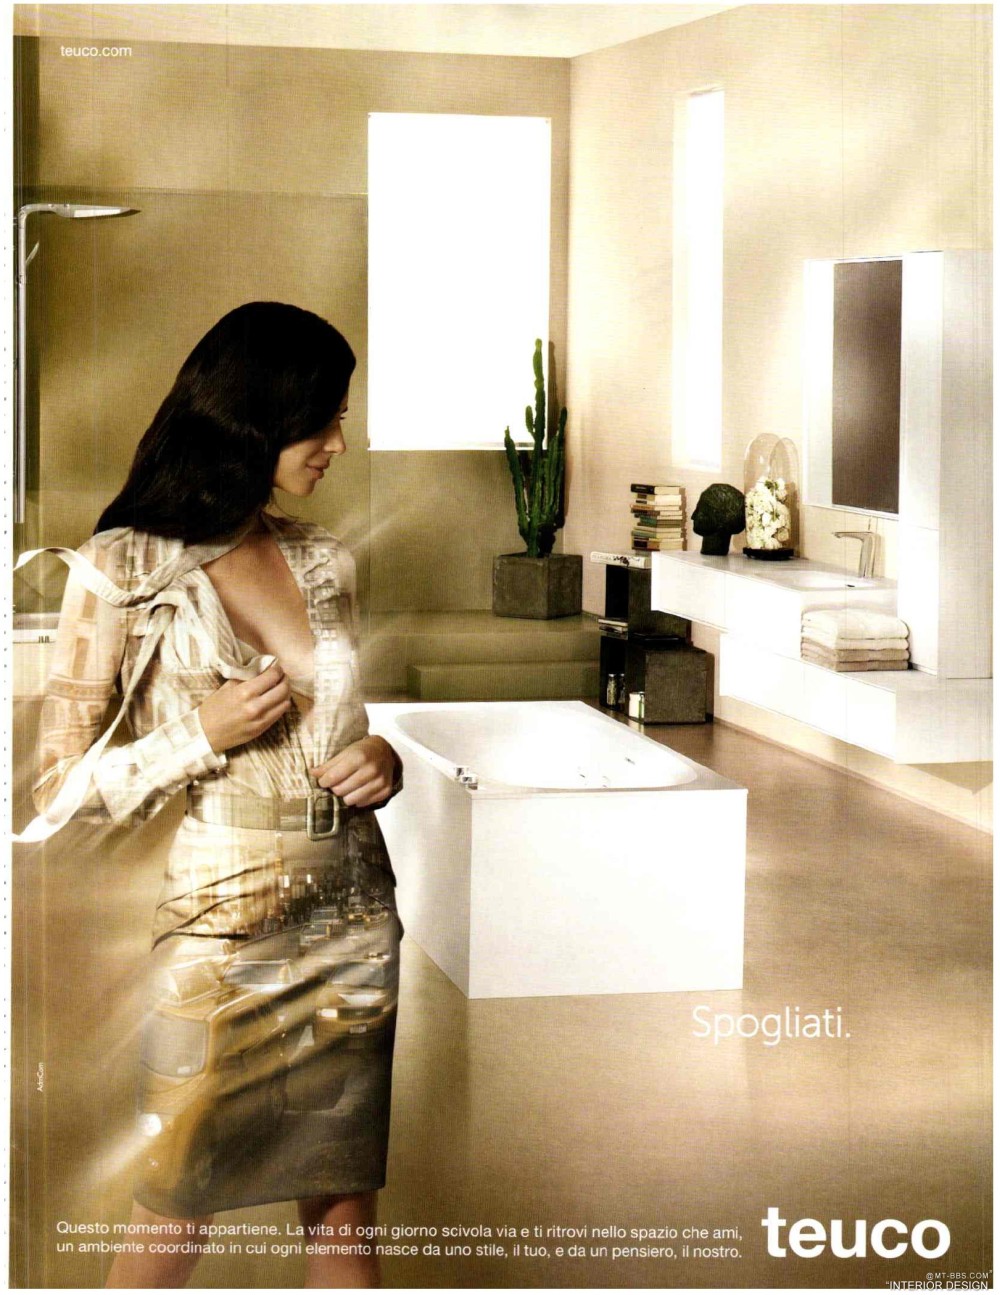 意大利AD 杂志 2012年全年JPG高清版本 全免（上传完毕）_0057.jpg